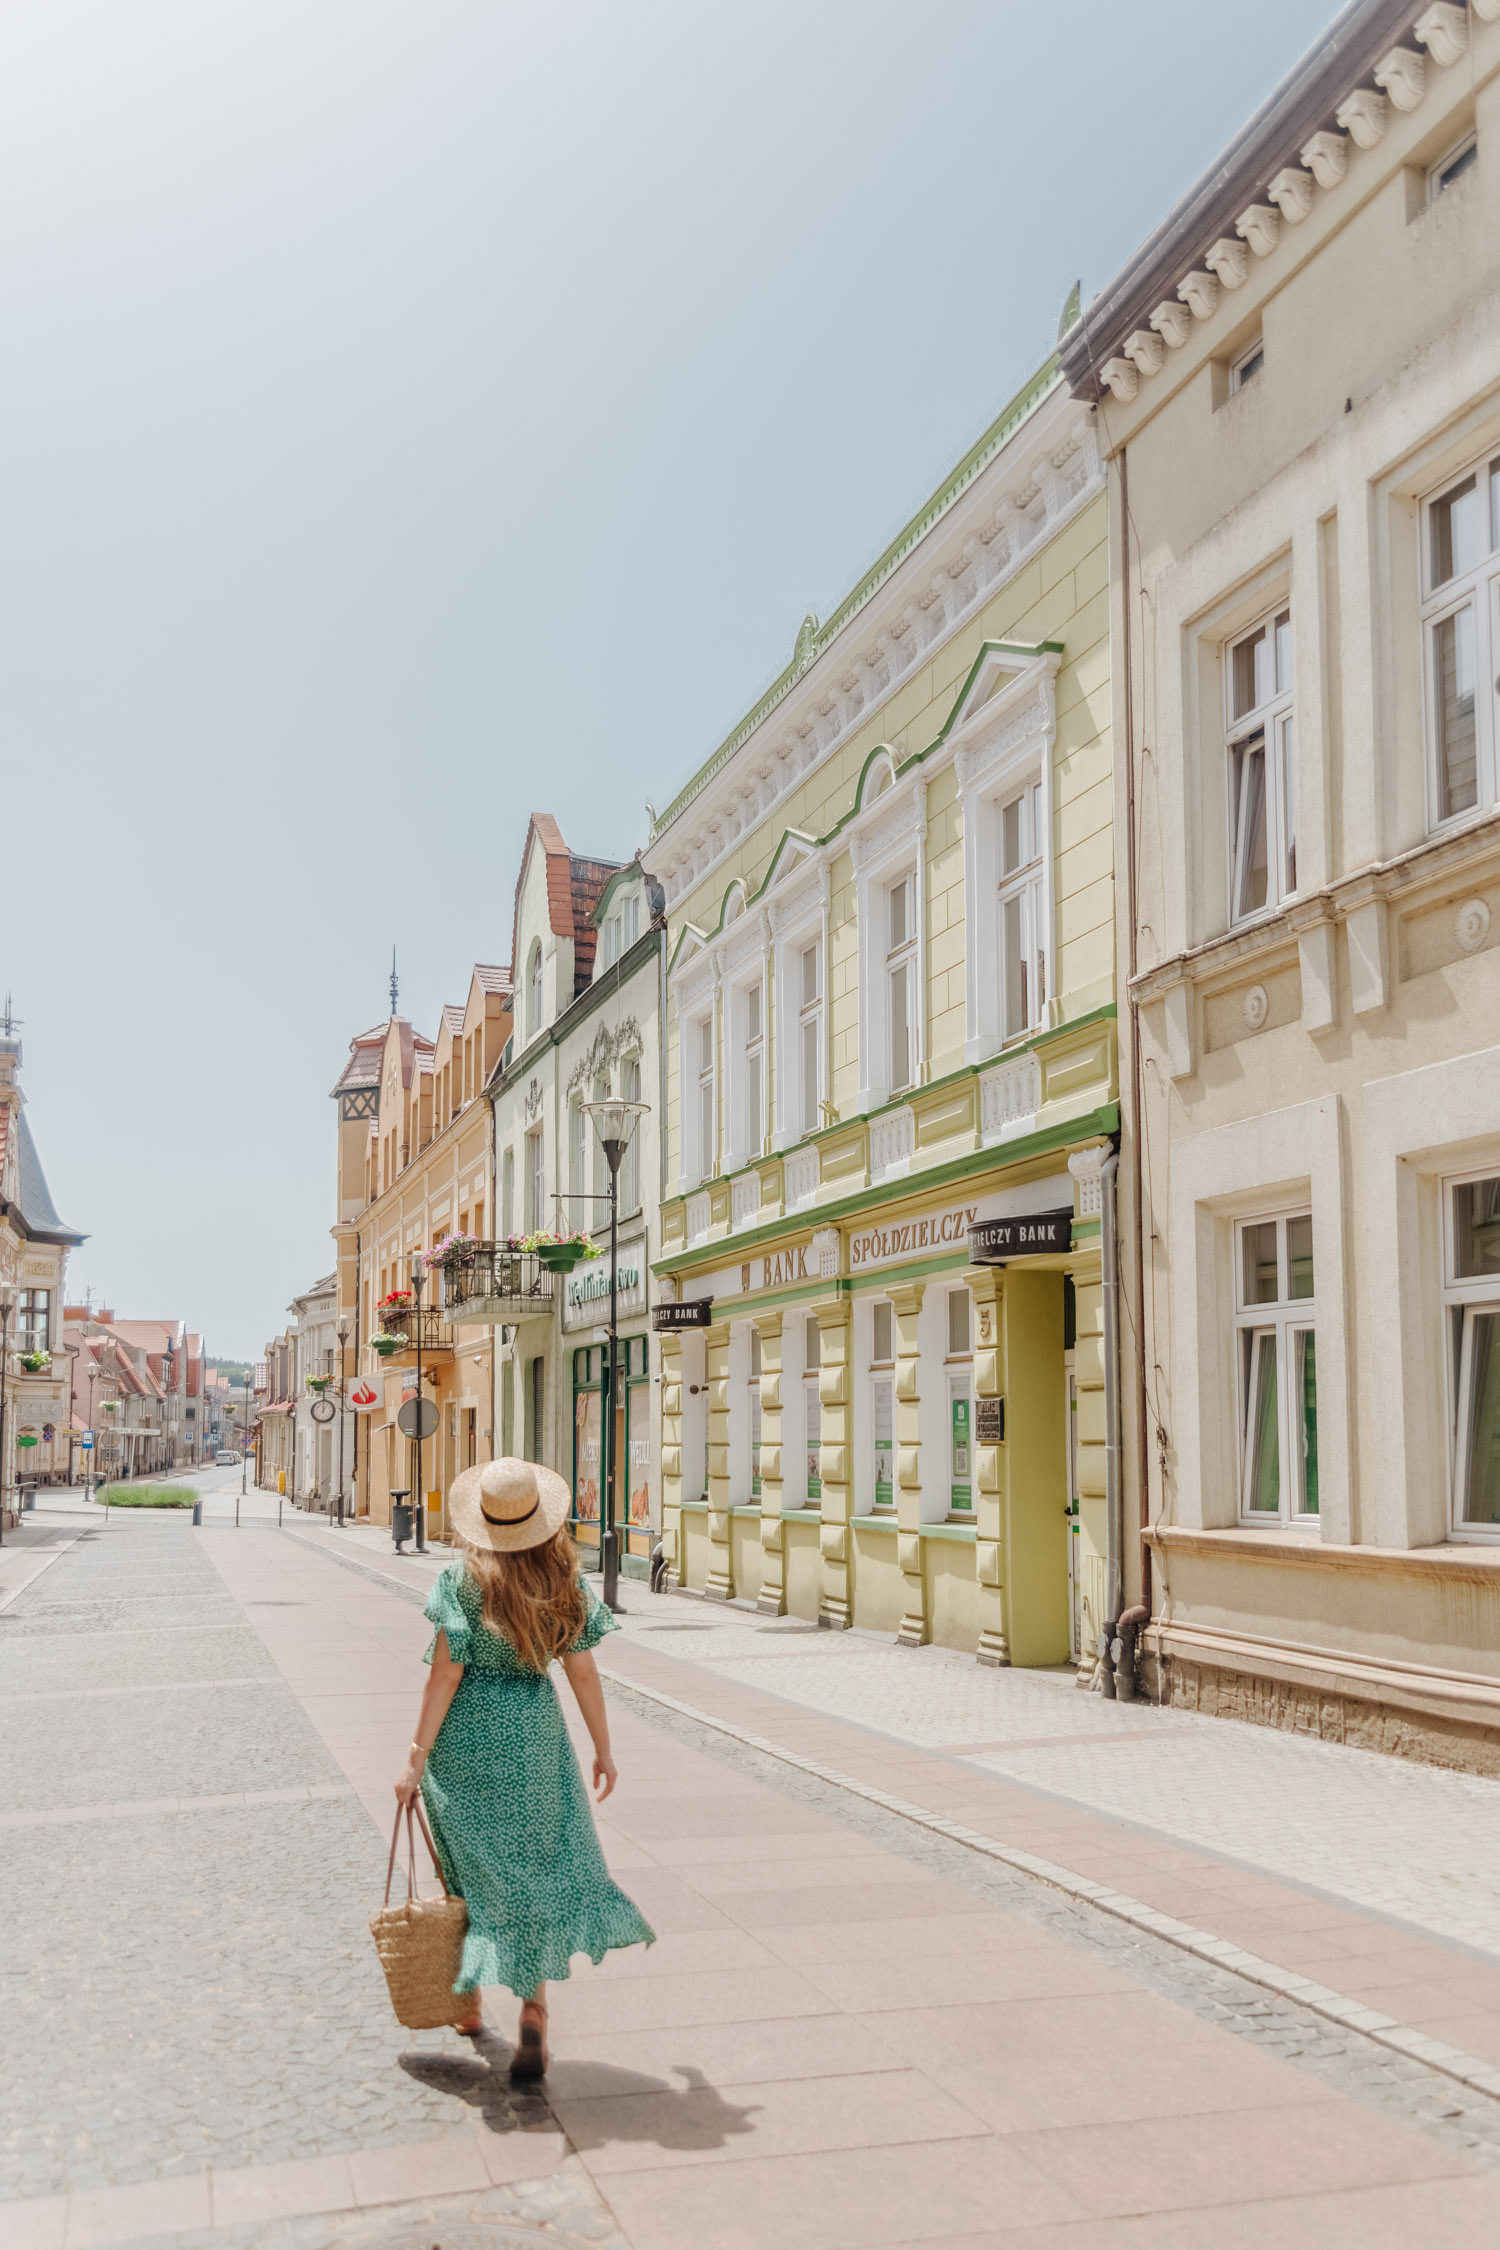 Picturesque town of Czarnkow in Wielkopolska, Poland.